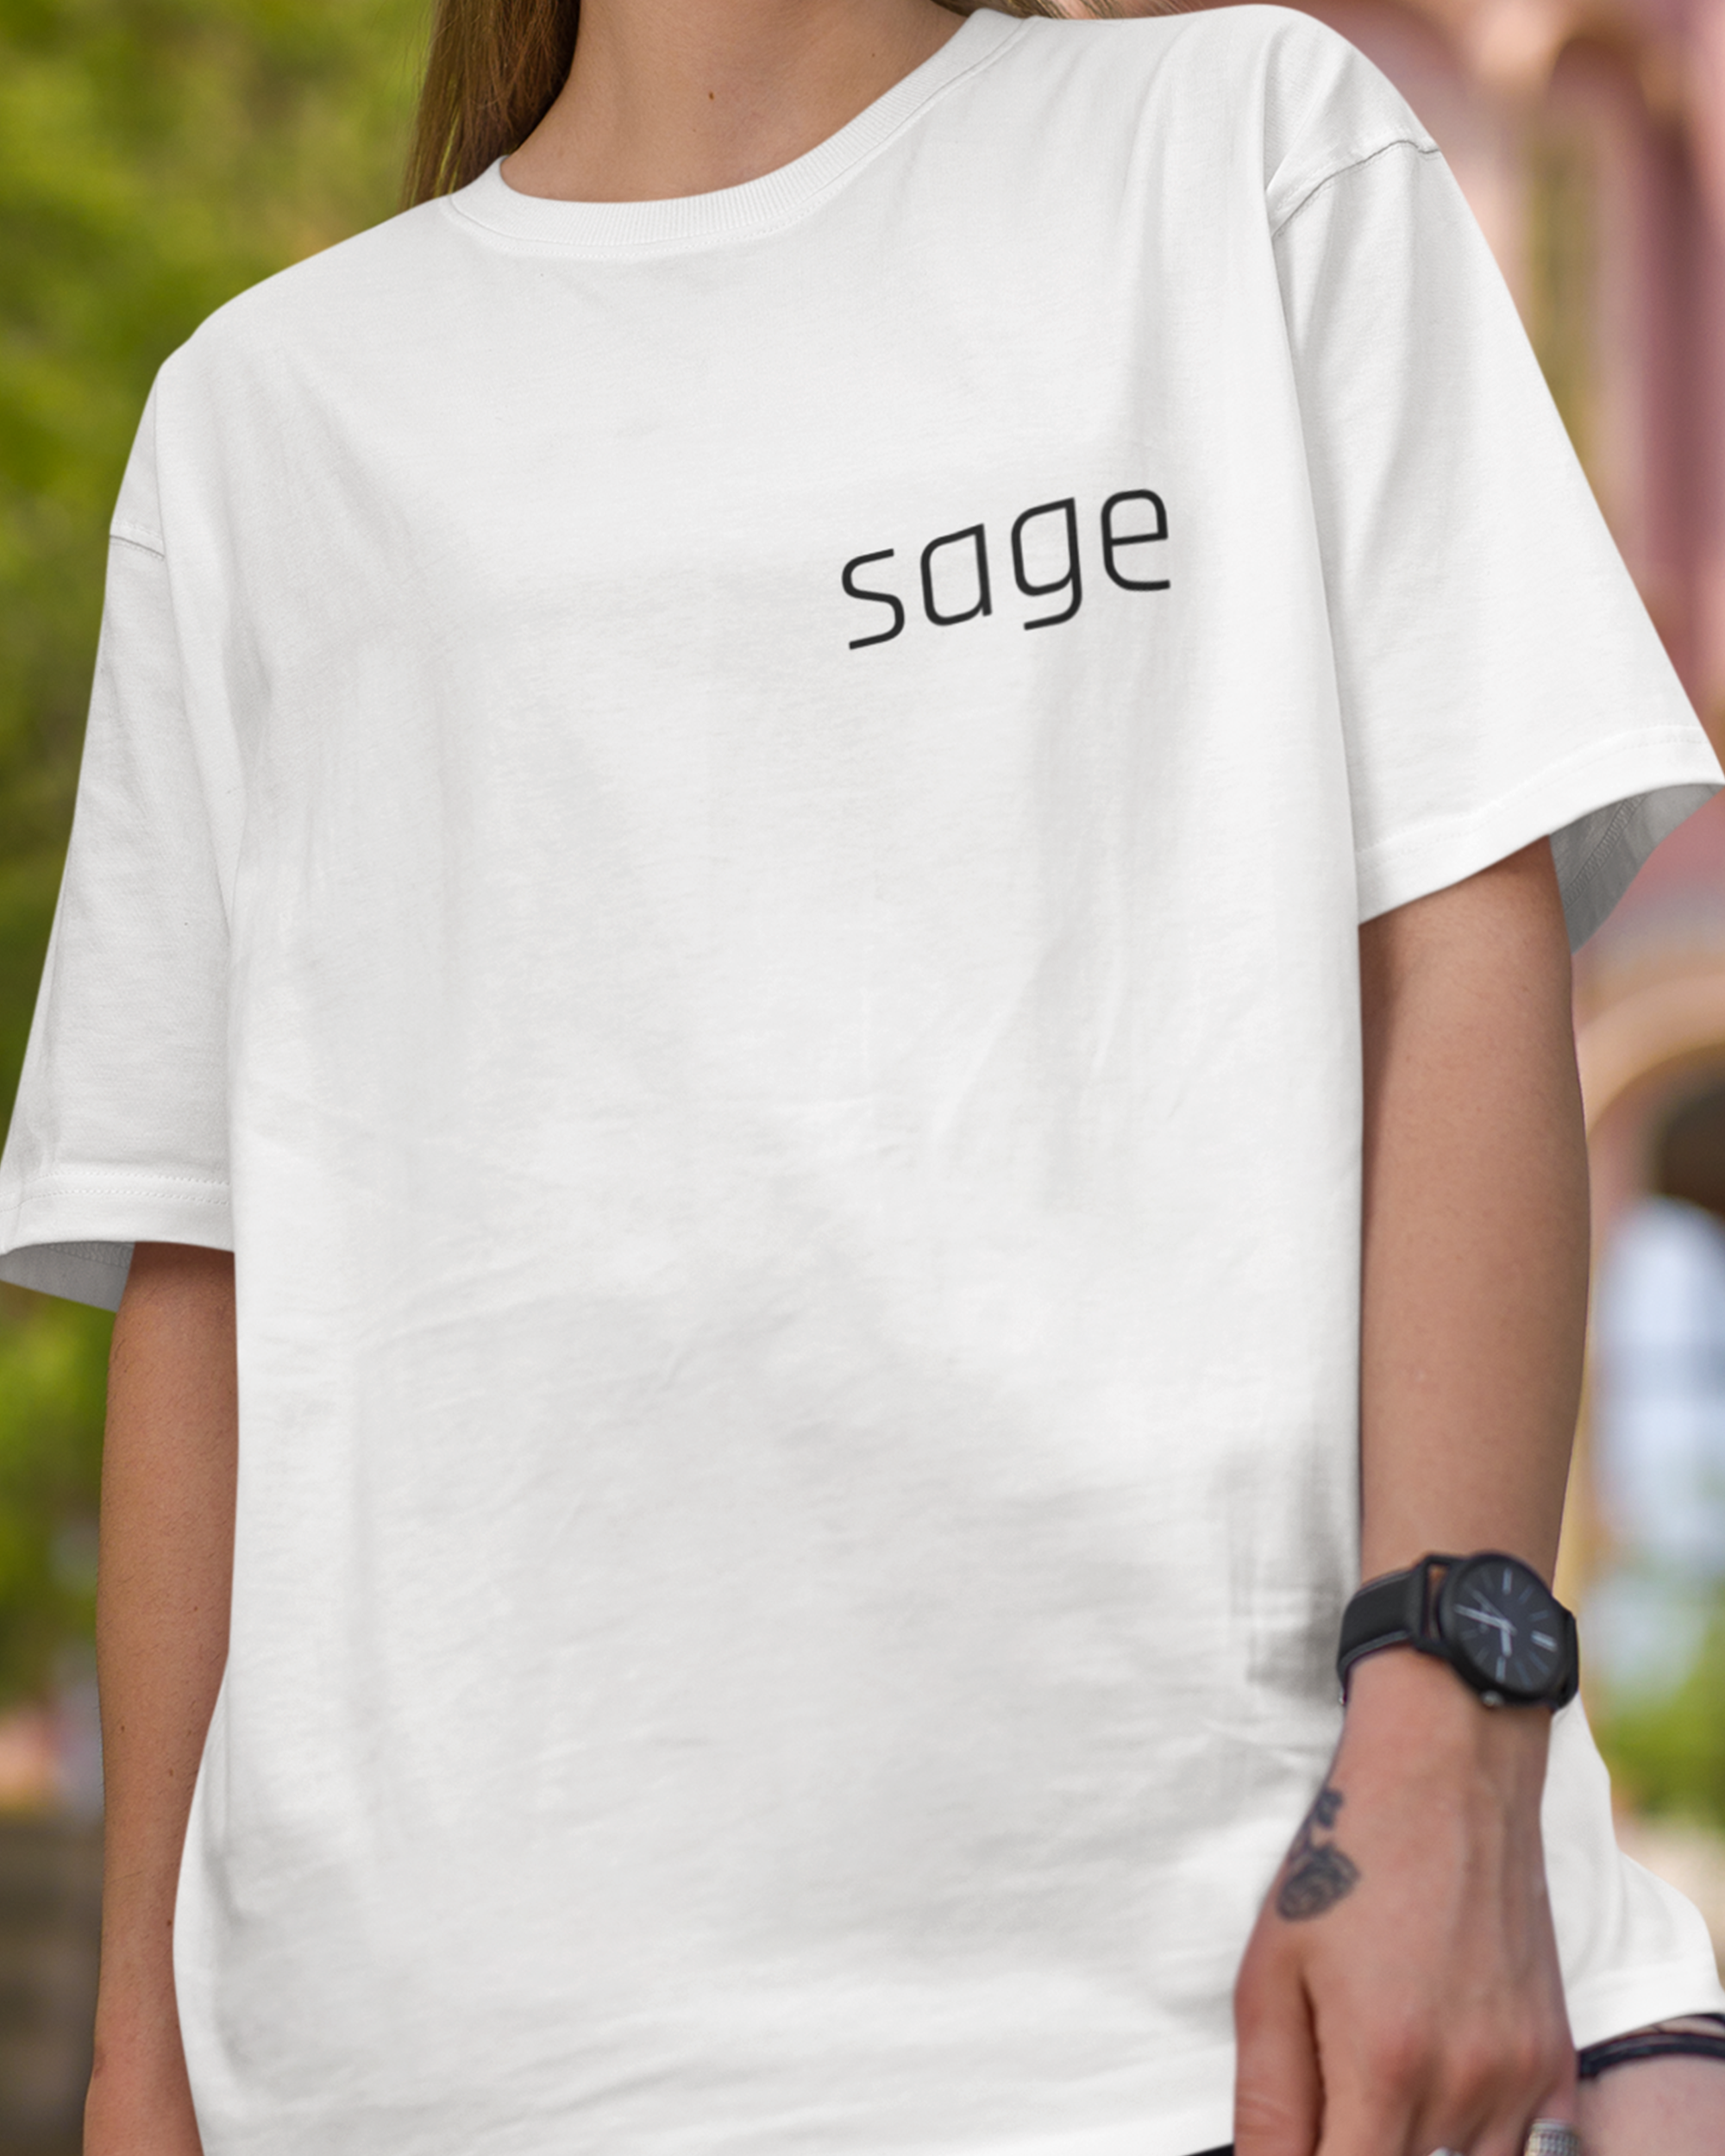 Sage Oversized Tshirt